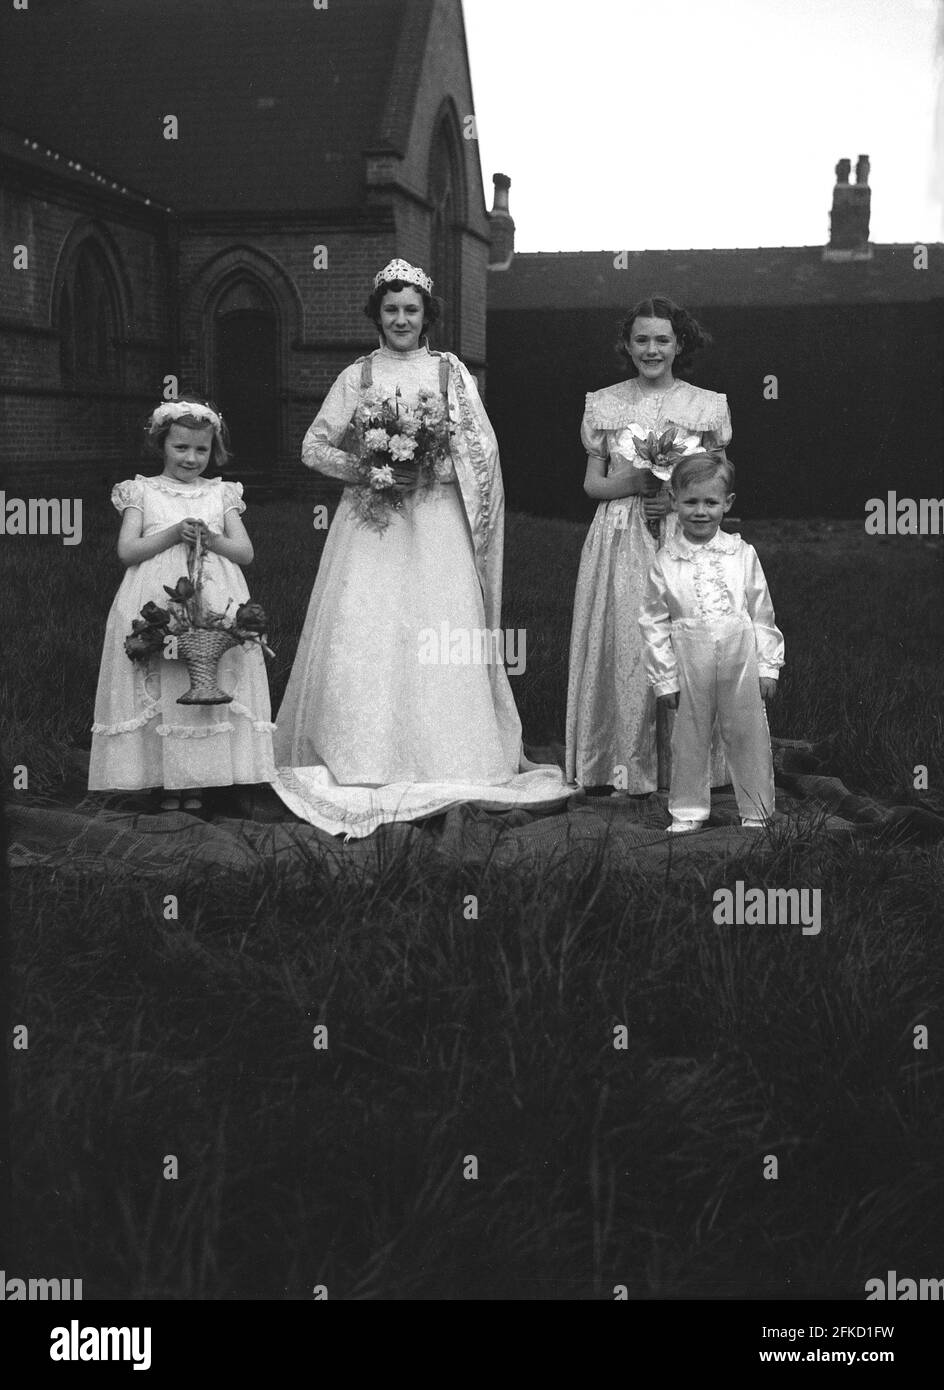 1958, historique, le Carnaval de la Reine de mai, la Reine de mai locale et trois autres jeunes enfants en costumes qui participent aux célébrations, se tiennent sur un tapis à l'extérieur d'une église pour leur photo. Le jour de mai était une tradition ancienne qui célébrait l'arrivée du printemps et de l'été. Dans de nombreuses villes britanniques du nord, le défilé était relié à l'école du dimanche de l'Église d'Angleterre. La figure de la reine de mai et sa pureté sont liées au culte et au folklore anciens. Banque D'Images